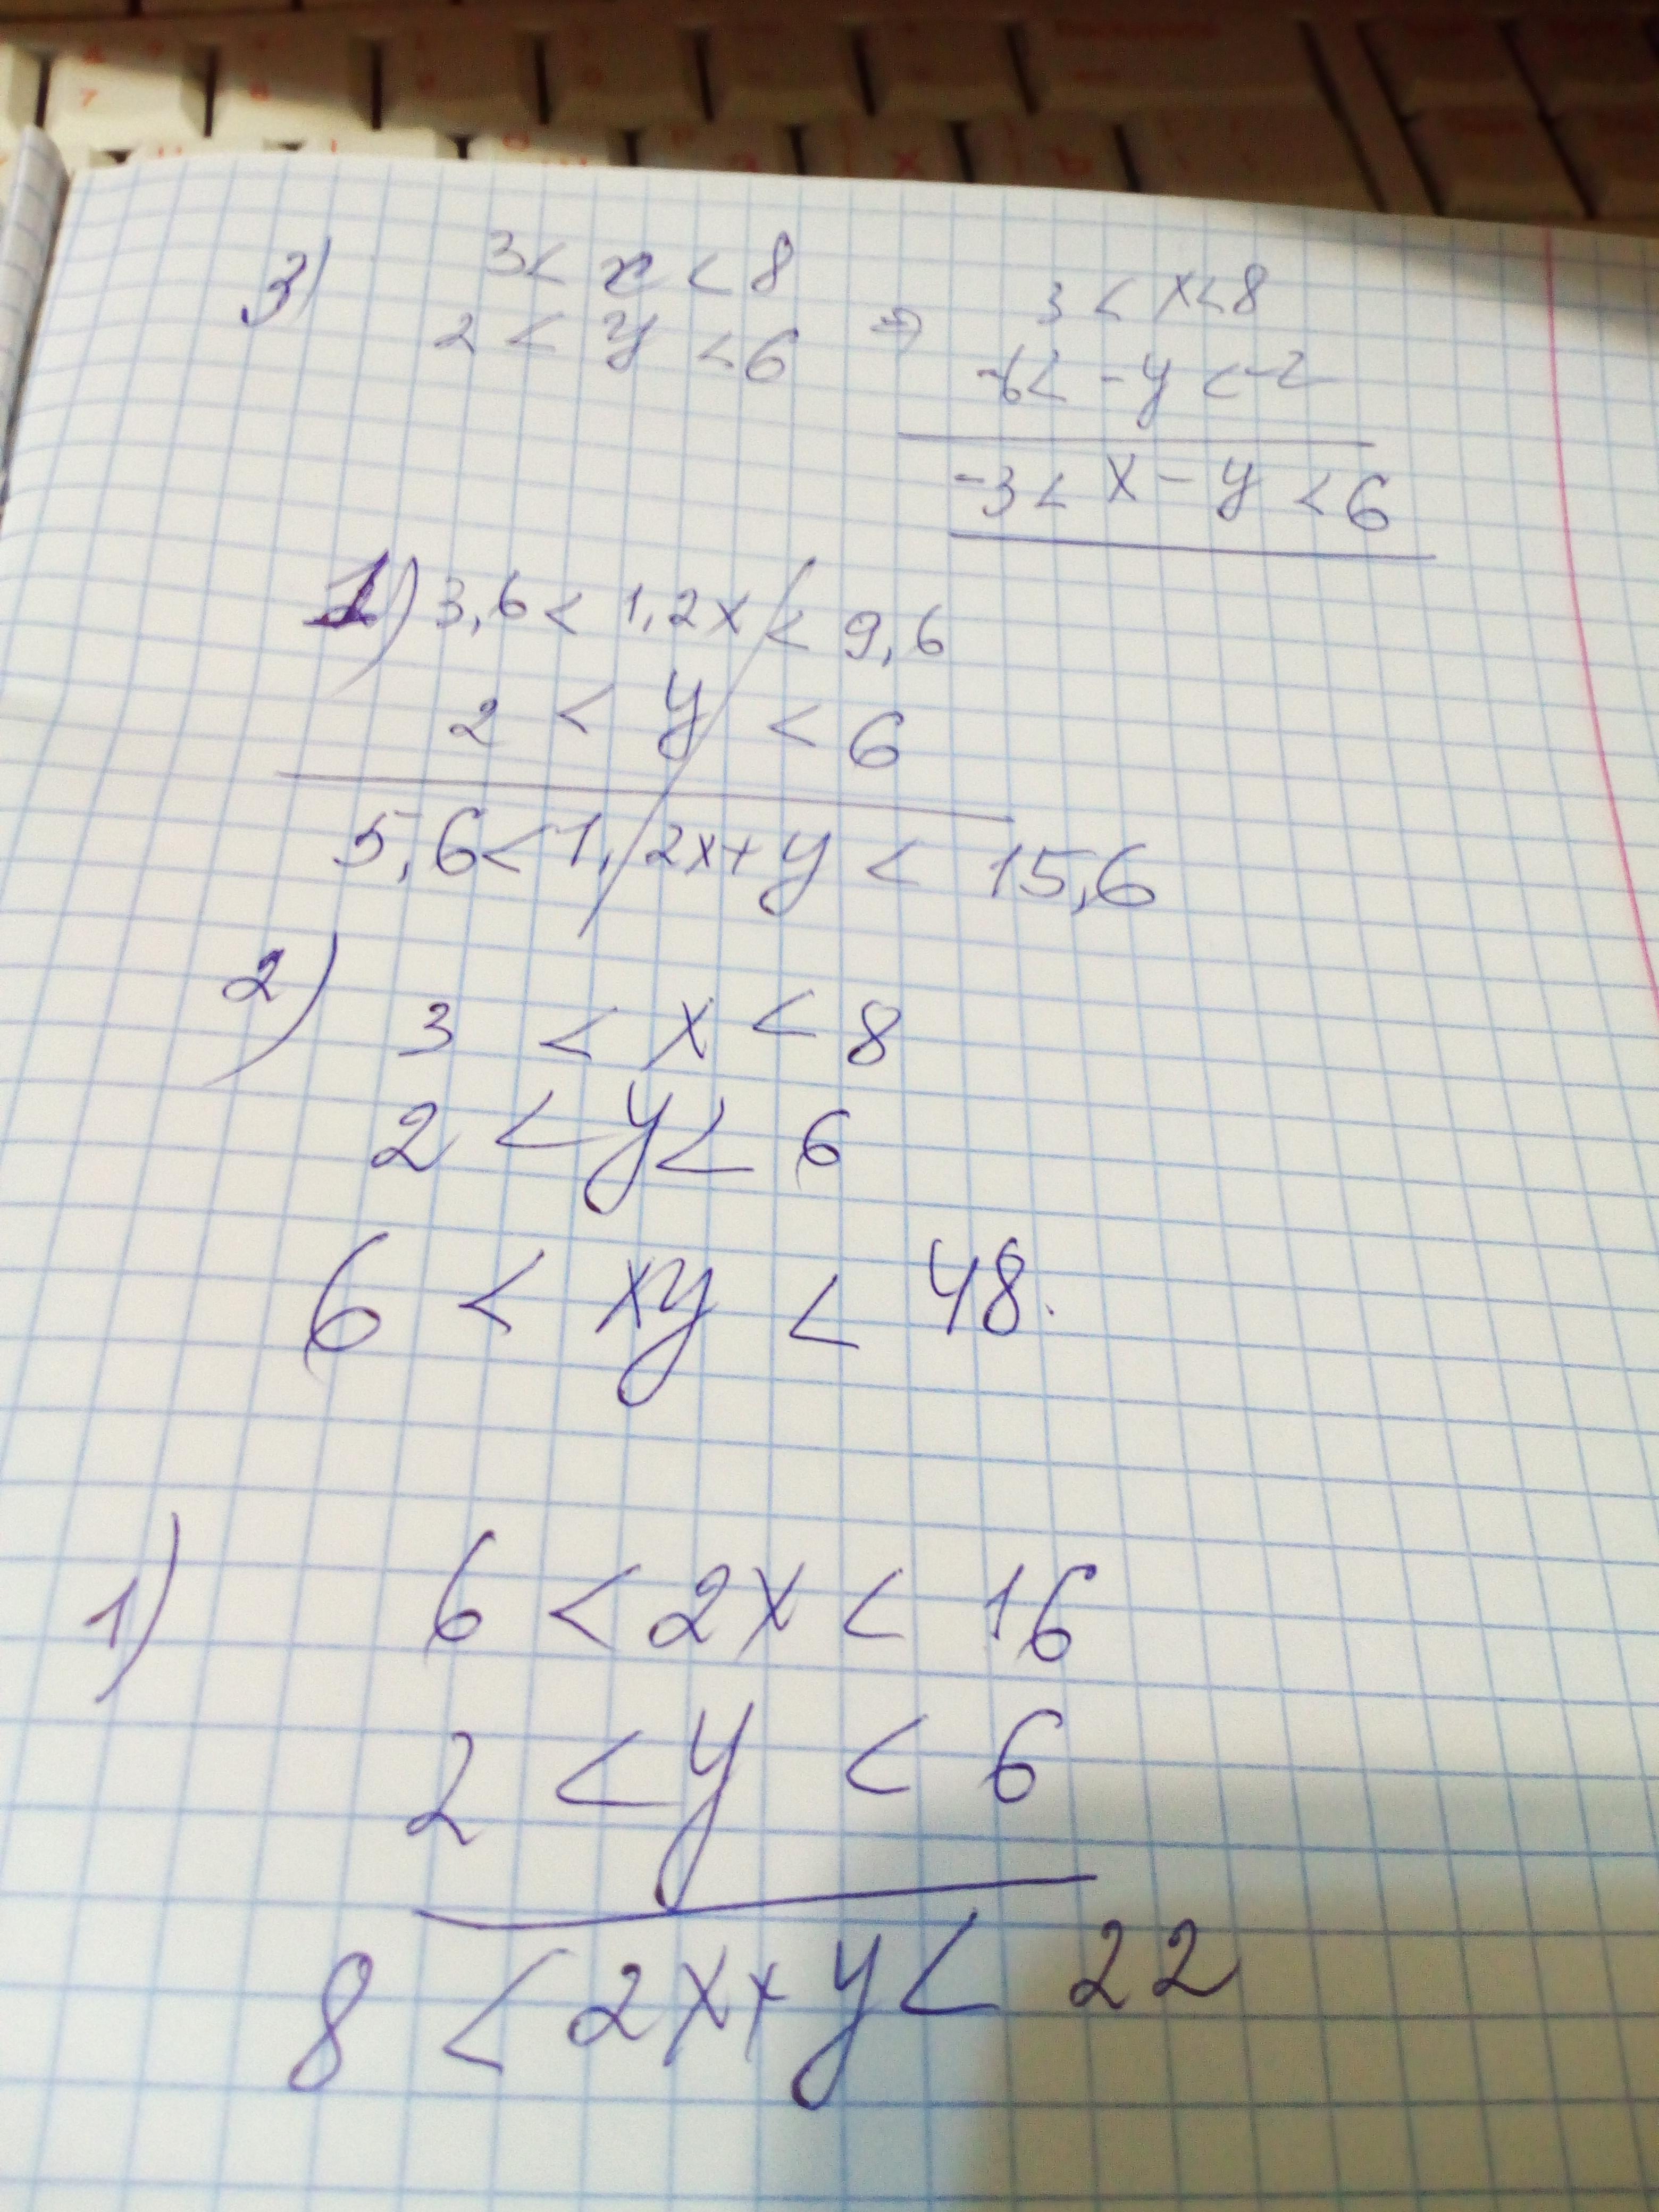 3х 2у 8 0. √3-3/3√2-√6. (Х-3х)2-8(х2-3х) - 20=0. Х^3+3х/2+х-3х^2/8=2х. 2 Х−2 У : Х 2− у2 2 у у.